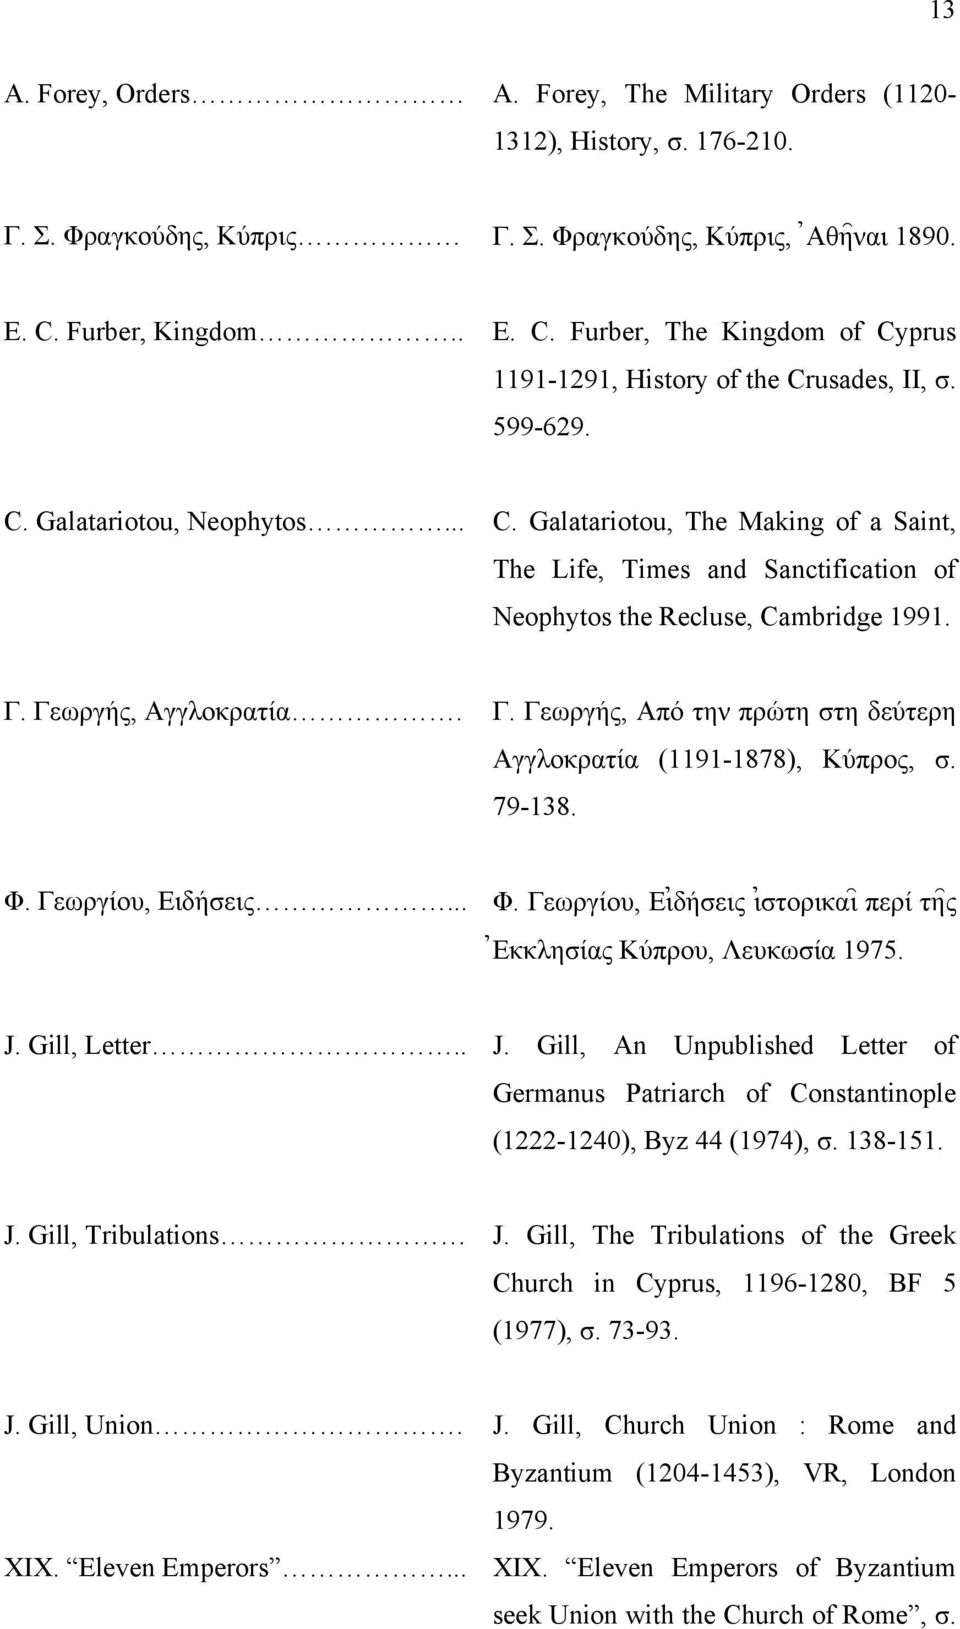 Γ. Γεωργής, Αγγλοκρατία. Γ. Γεωργής, Από την πρώτη στη δεύτερη Αγγλοκρατία (1191-1878), Κύπρος, σ. 79-138. Φ. Γεωργίου, Ειδήσεις... Φ. Γεωργίου, Ει0δήσεις ι0στορικαι= περί τη=ς 0Εκκλησίας Κύπρου, Λευκωσία 1975.